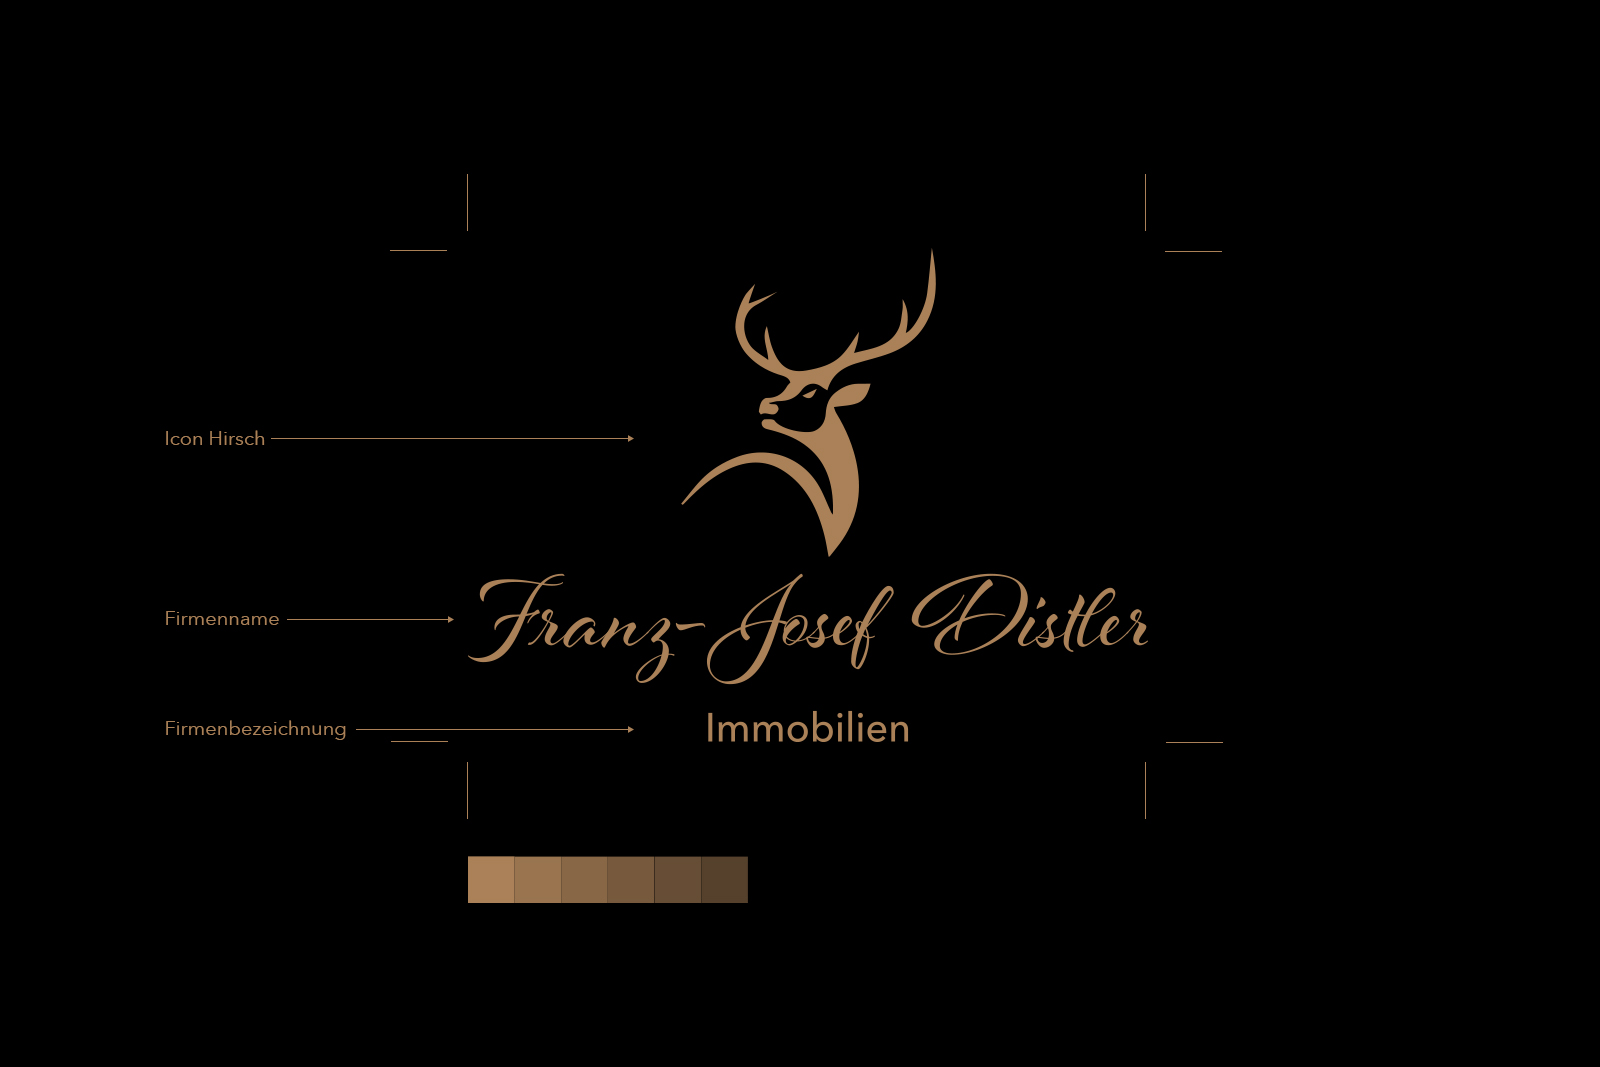 Logo Franz-Josef Distler Immobilien